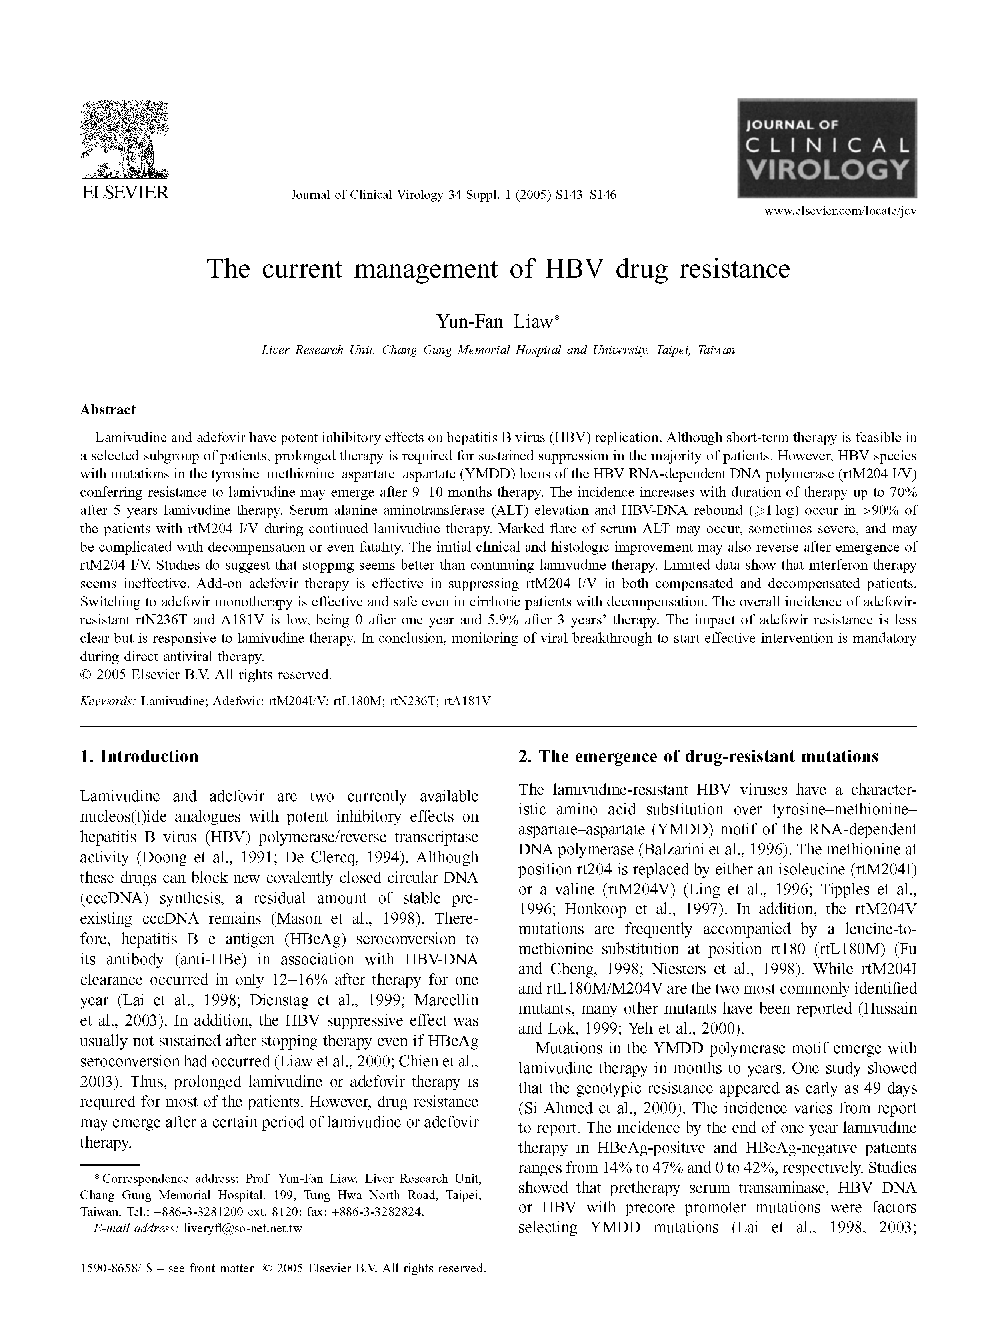 The current management of HBV drug resistance